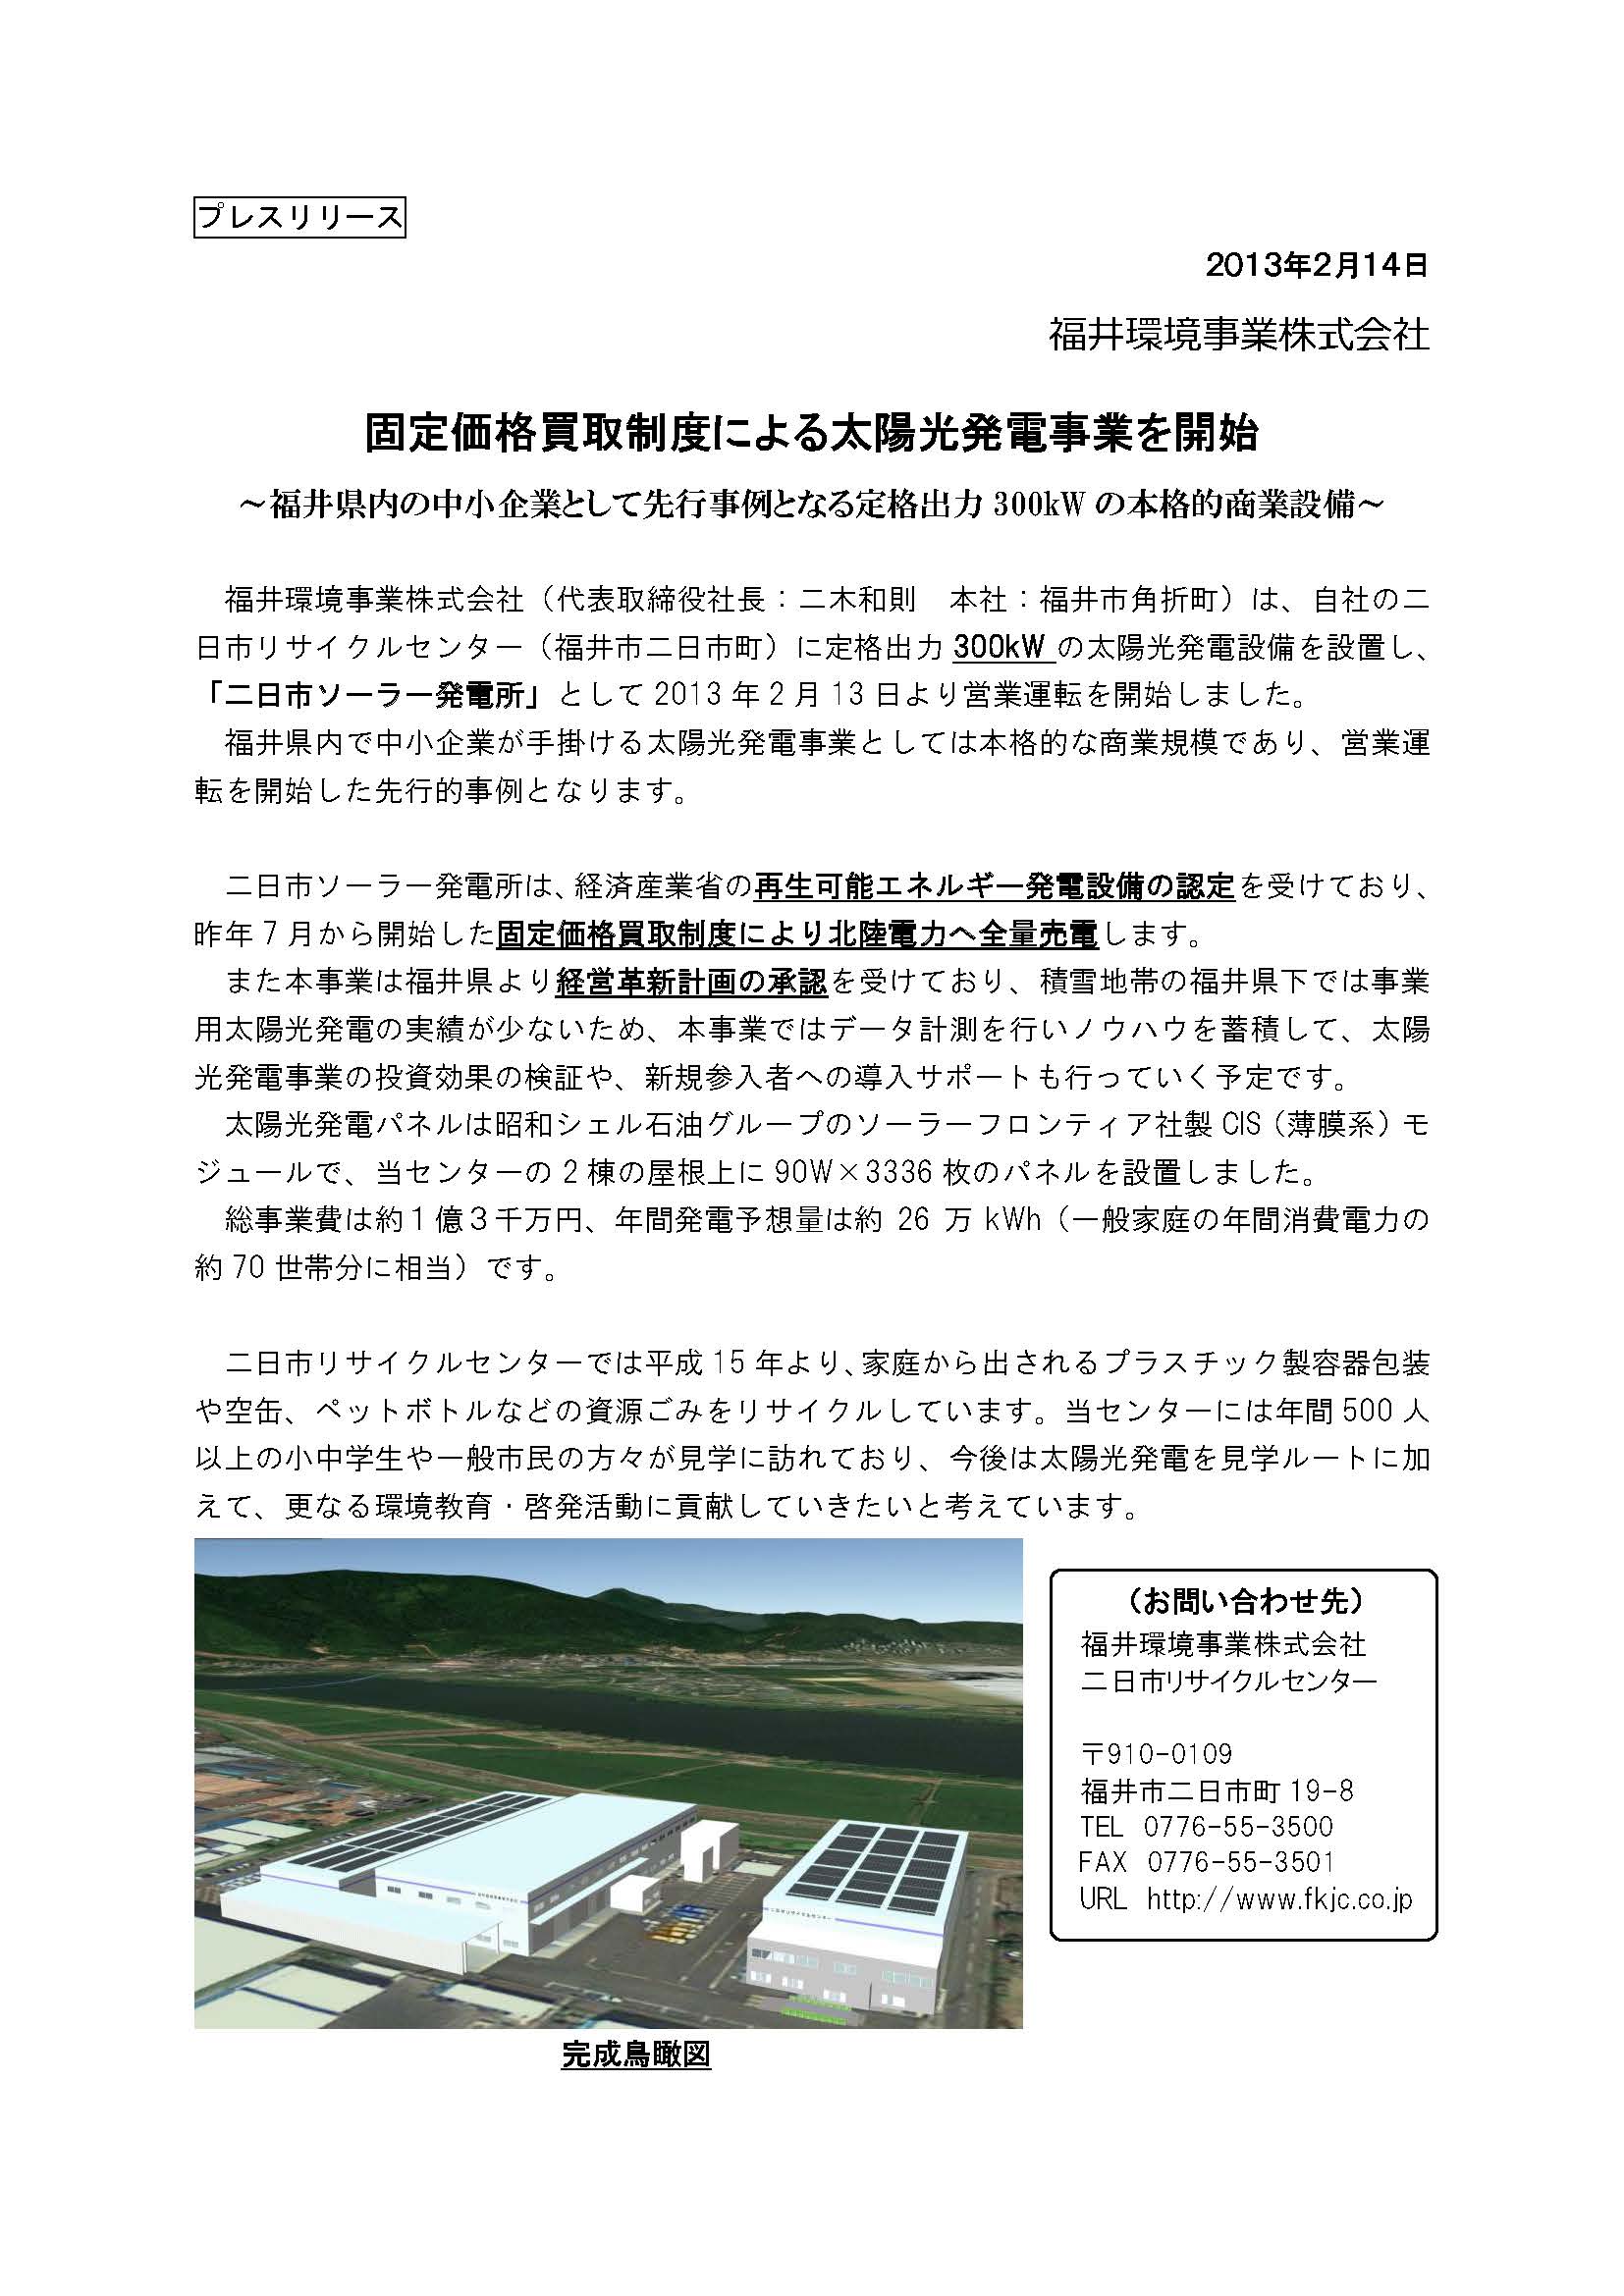 太陽光発電事業（定格出力300kW）を開始しました。